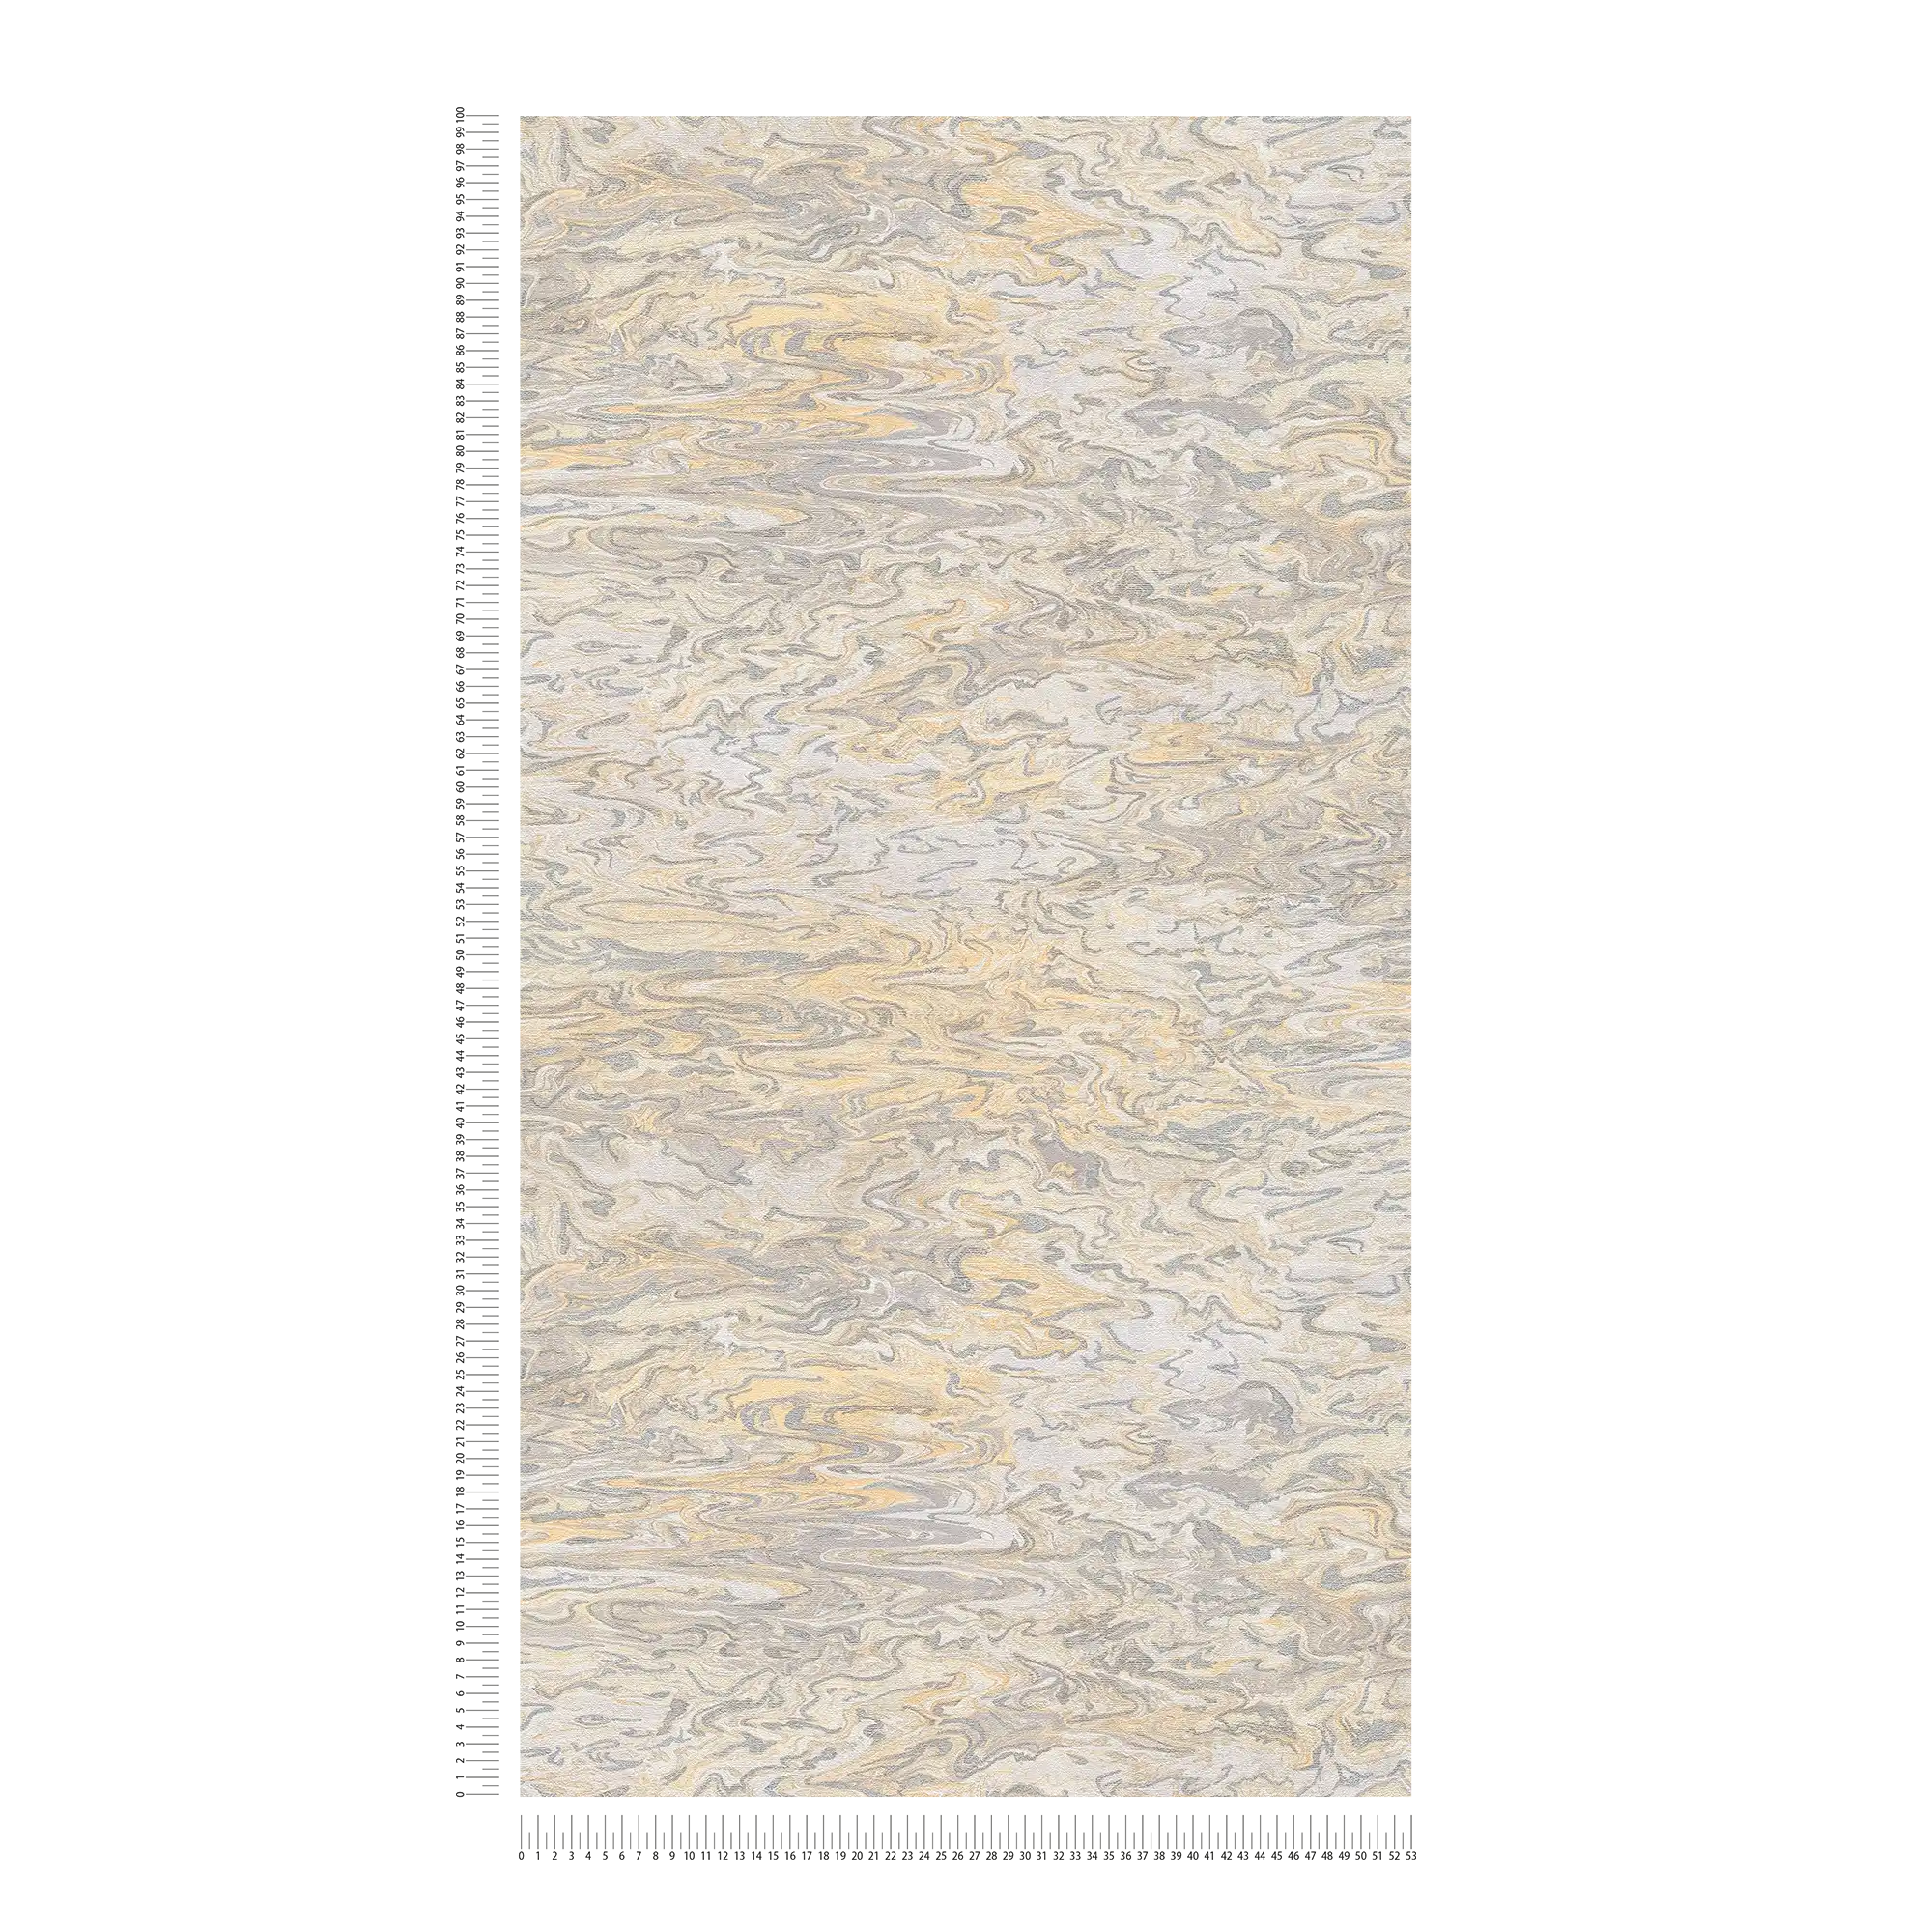             Marmorierte Tapete abstraktes Design – Beige, Grau, Creme
        